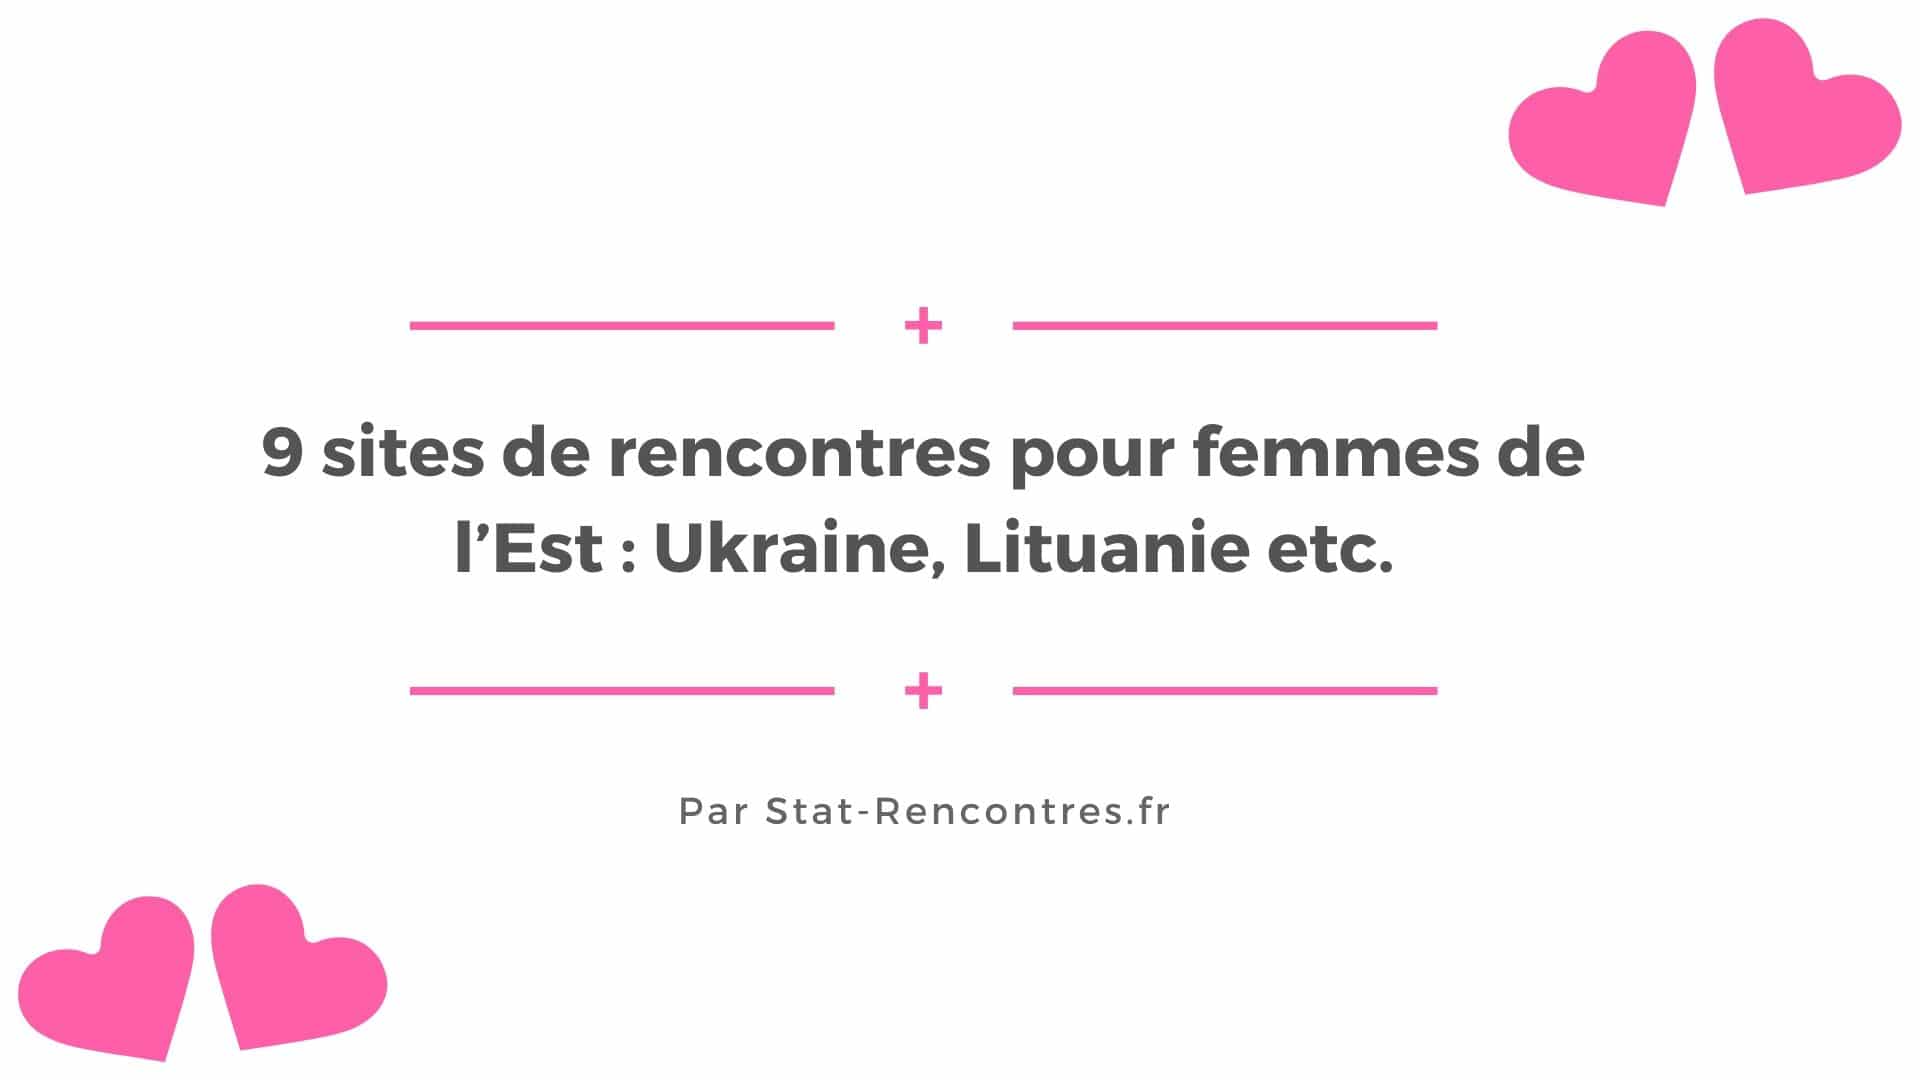 Lituanie Rencontre Femme - Meilleure Site De Rencontre Sexe.